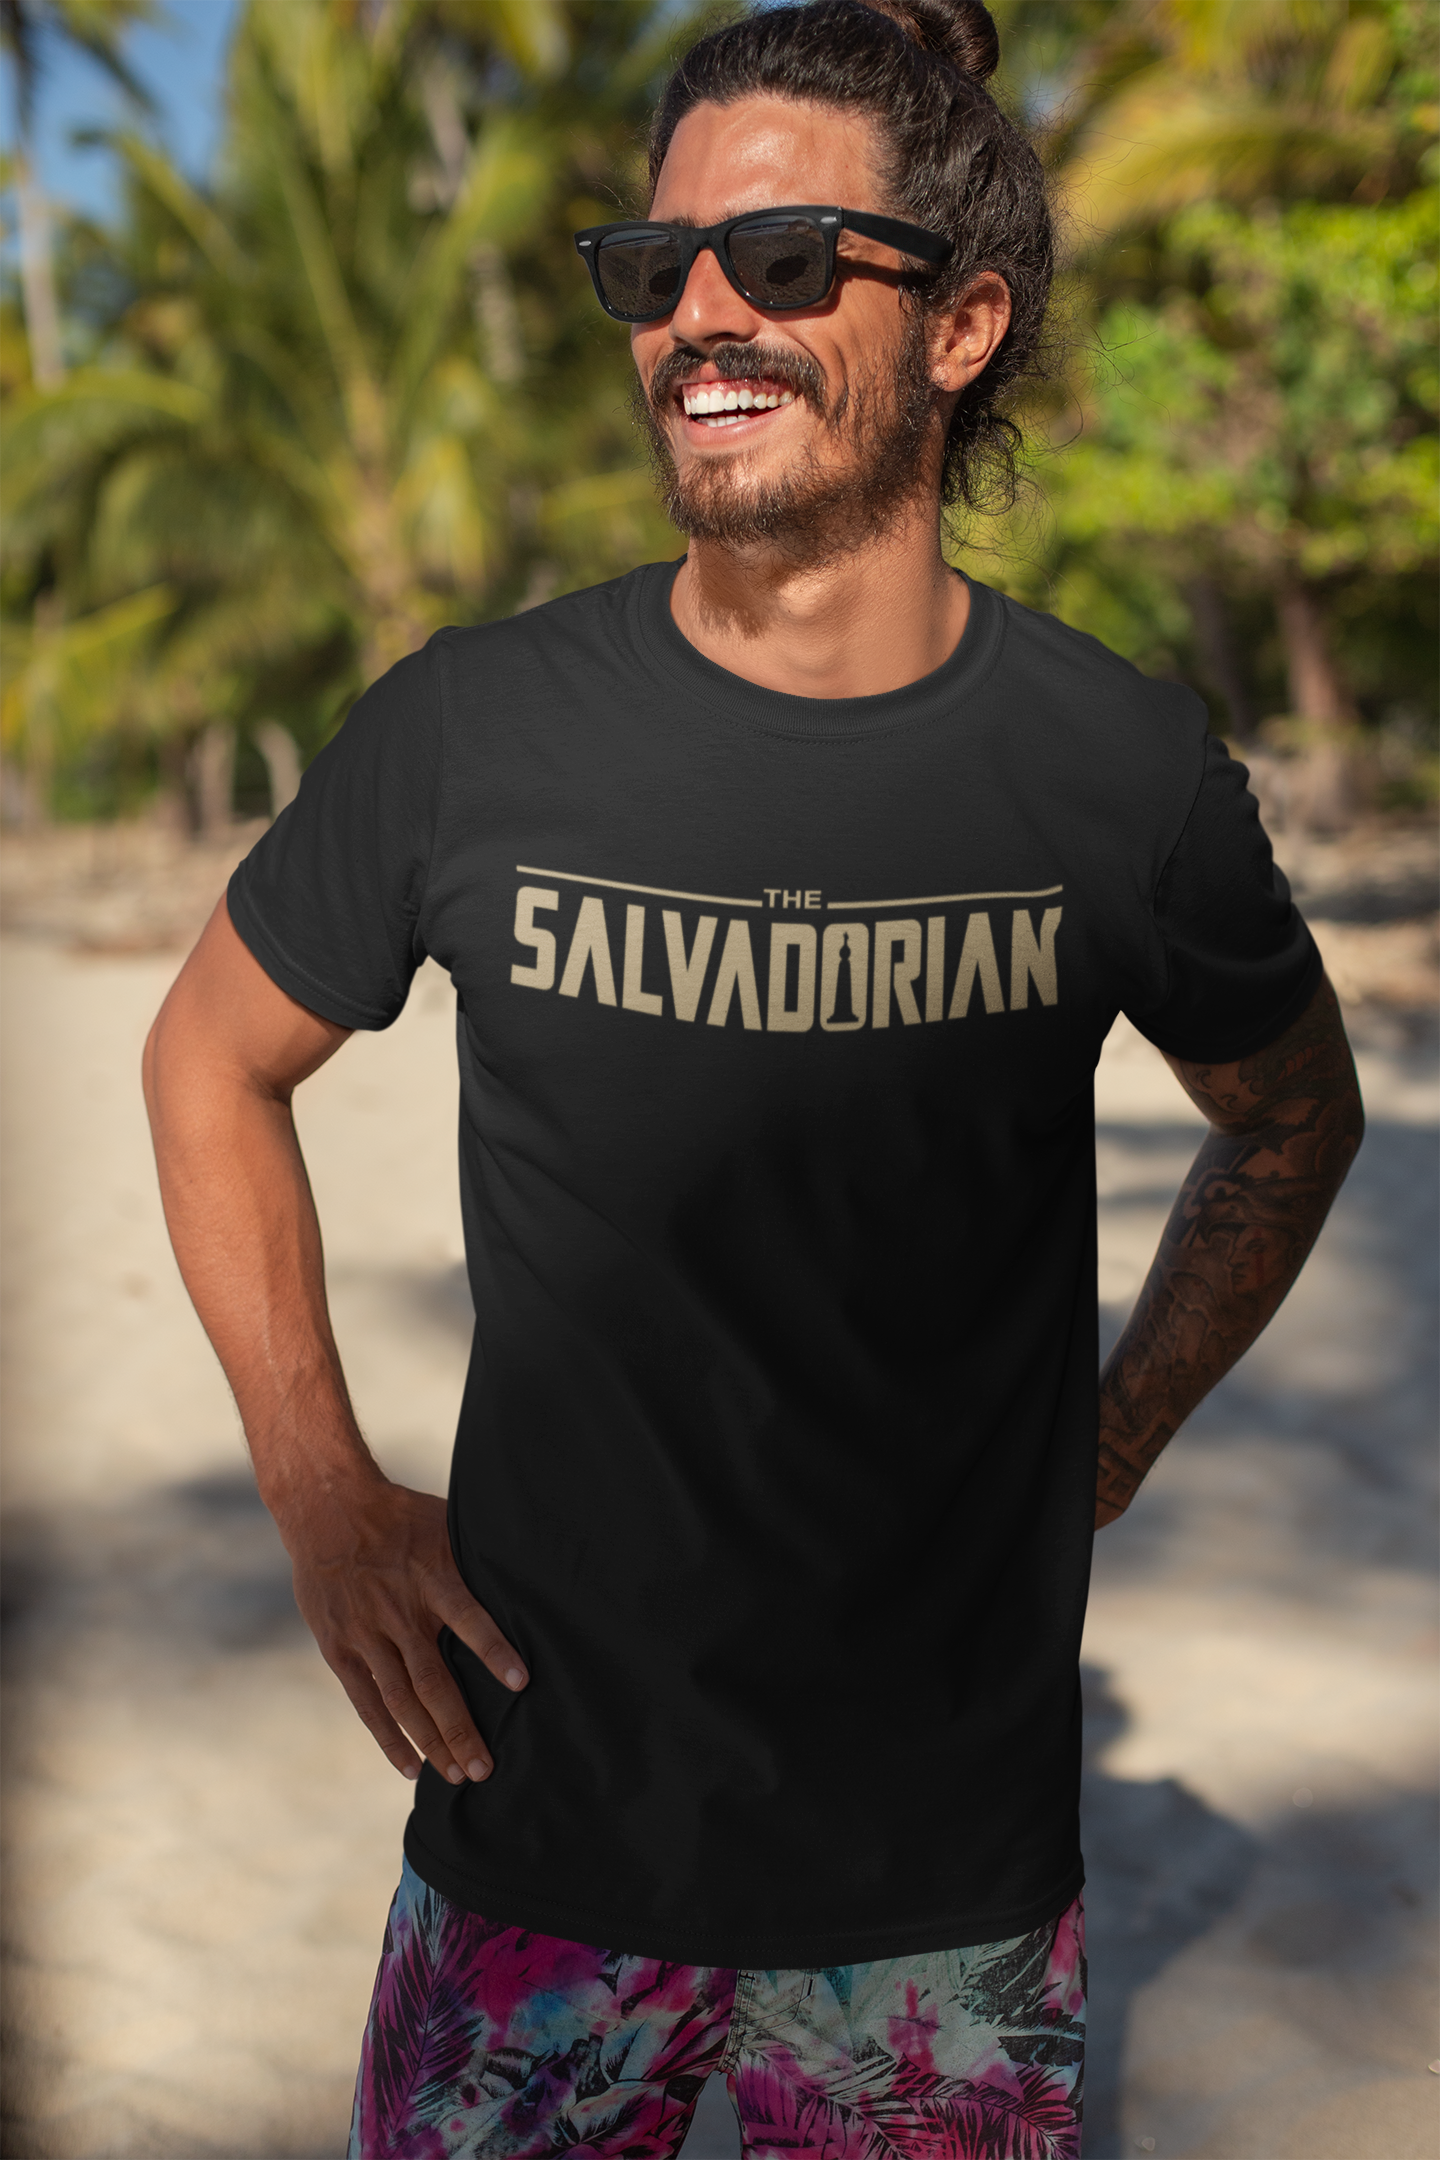 The Salvadorian